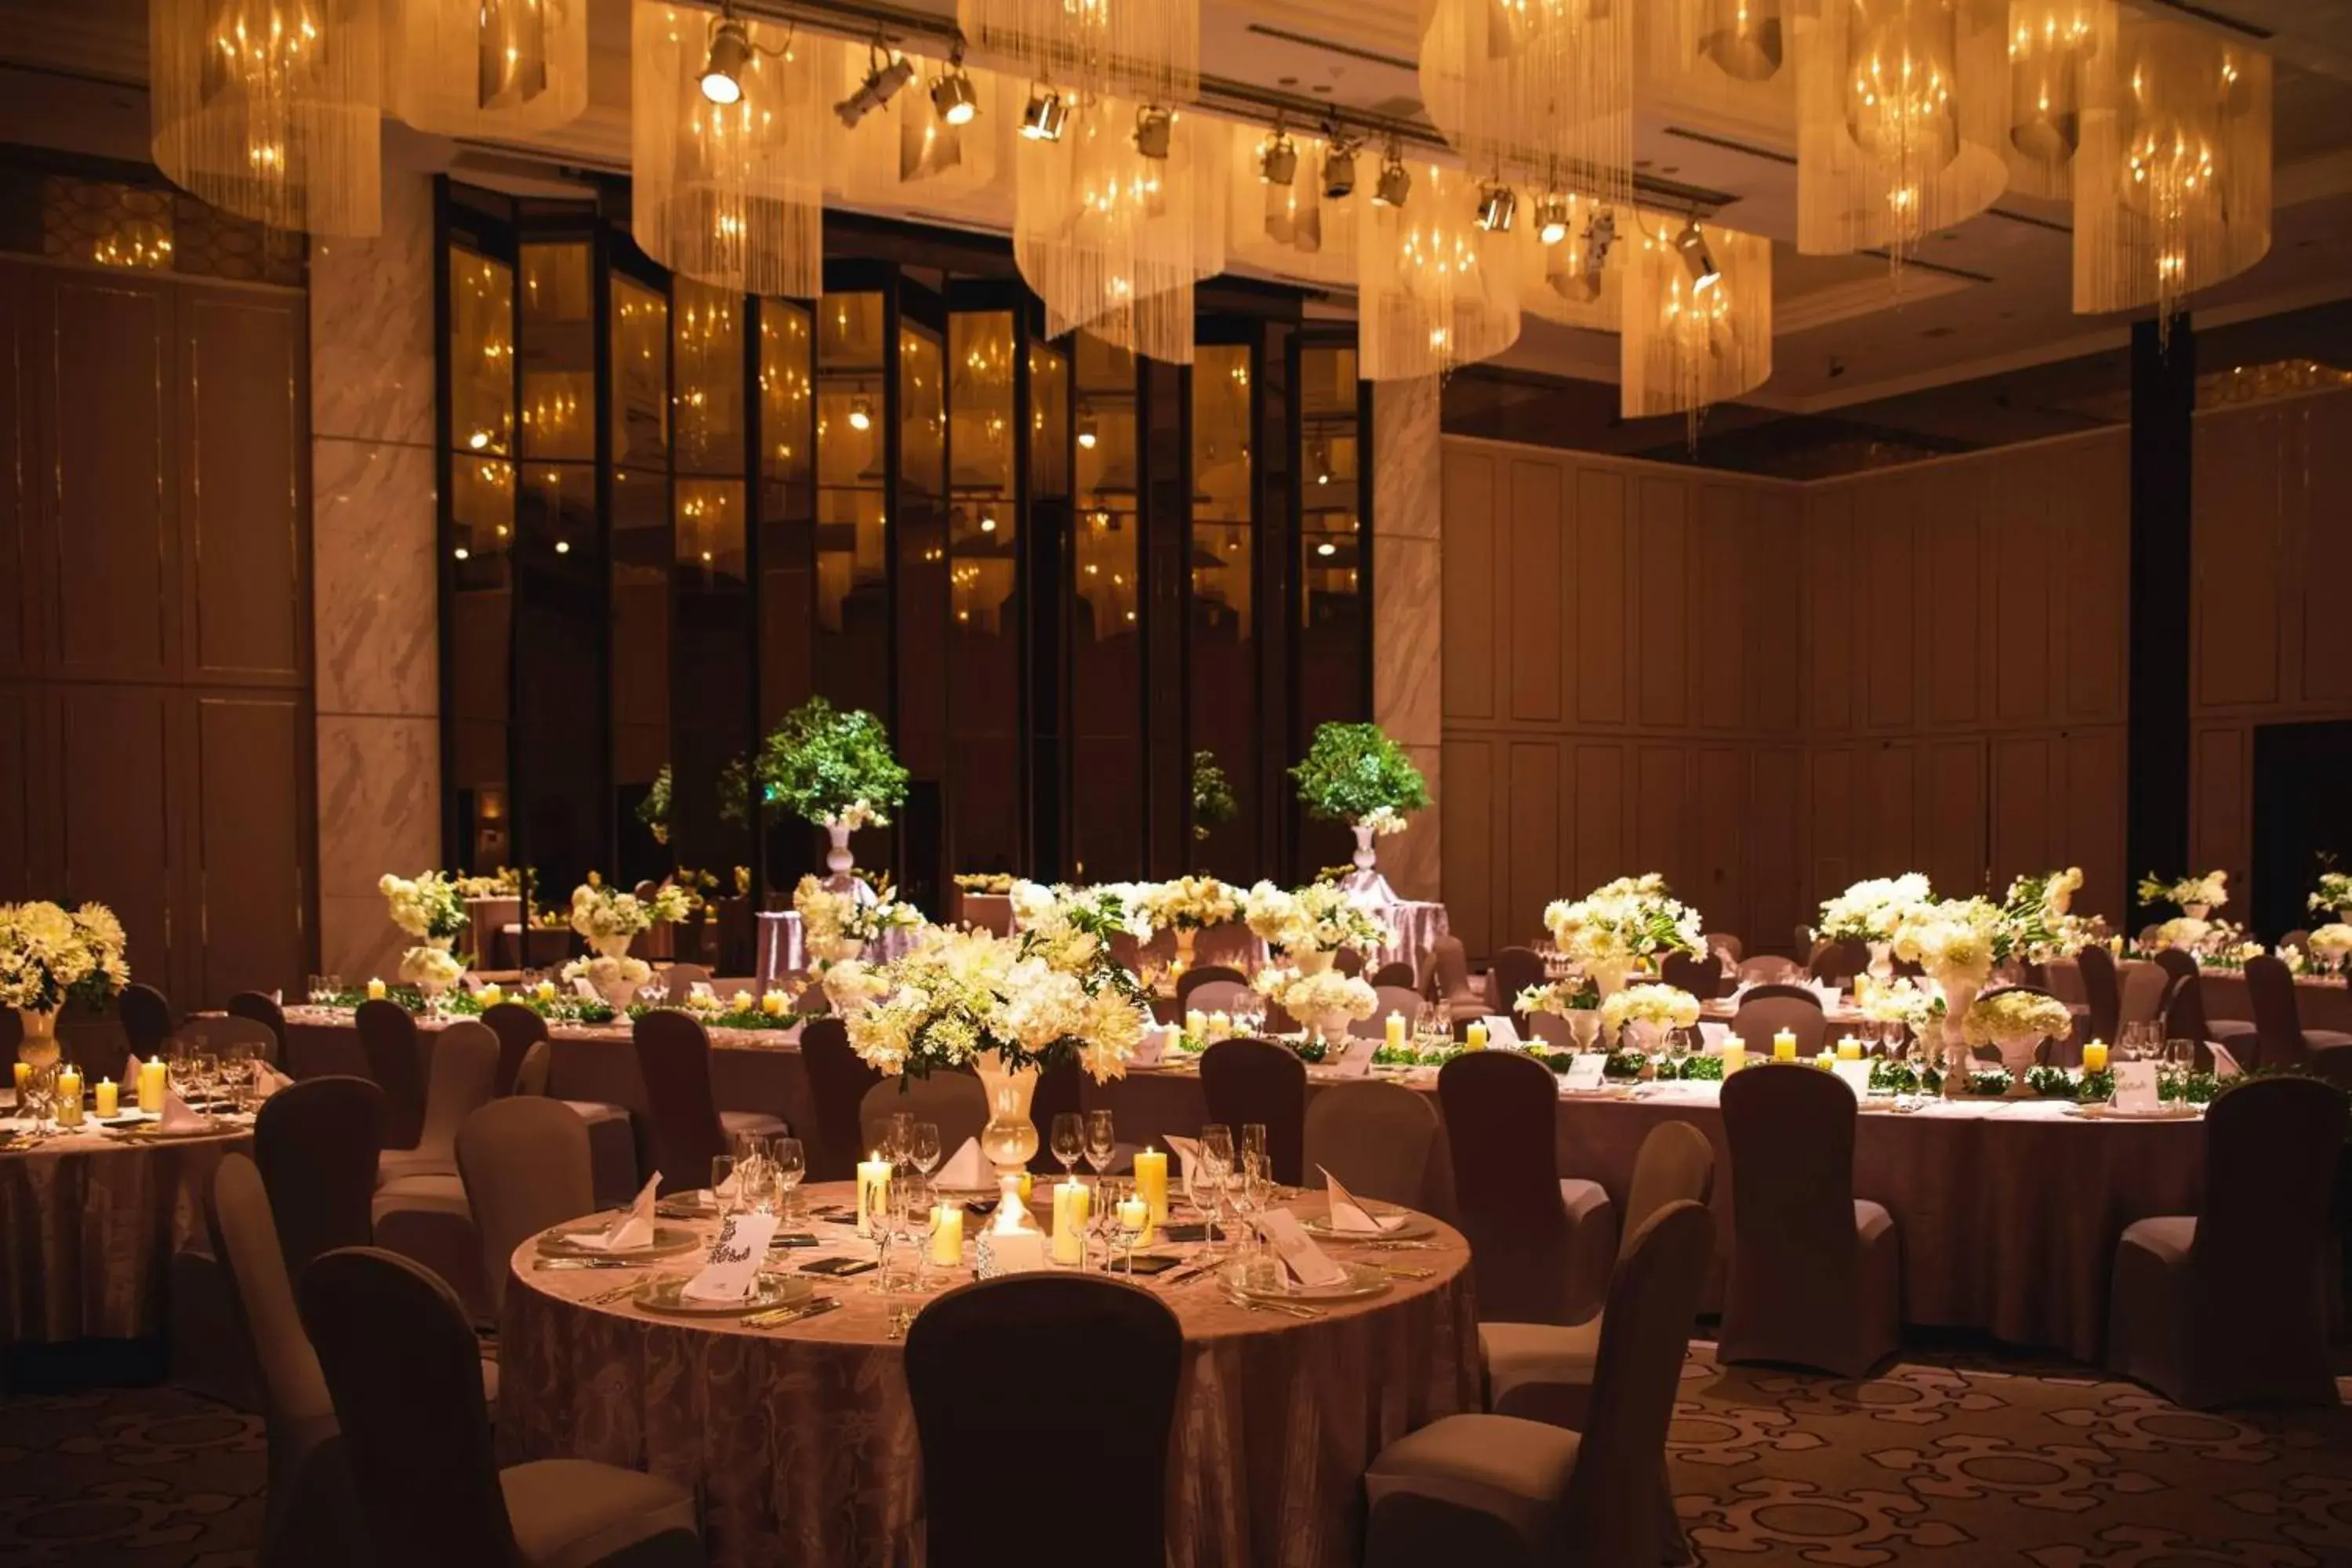 Banquet/Function facilities, Banquet Facilities in Tokyo Marriott Hotel